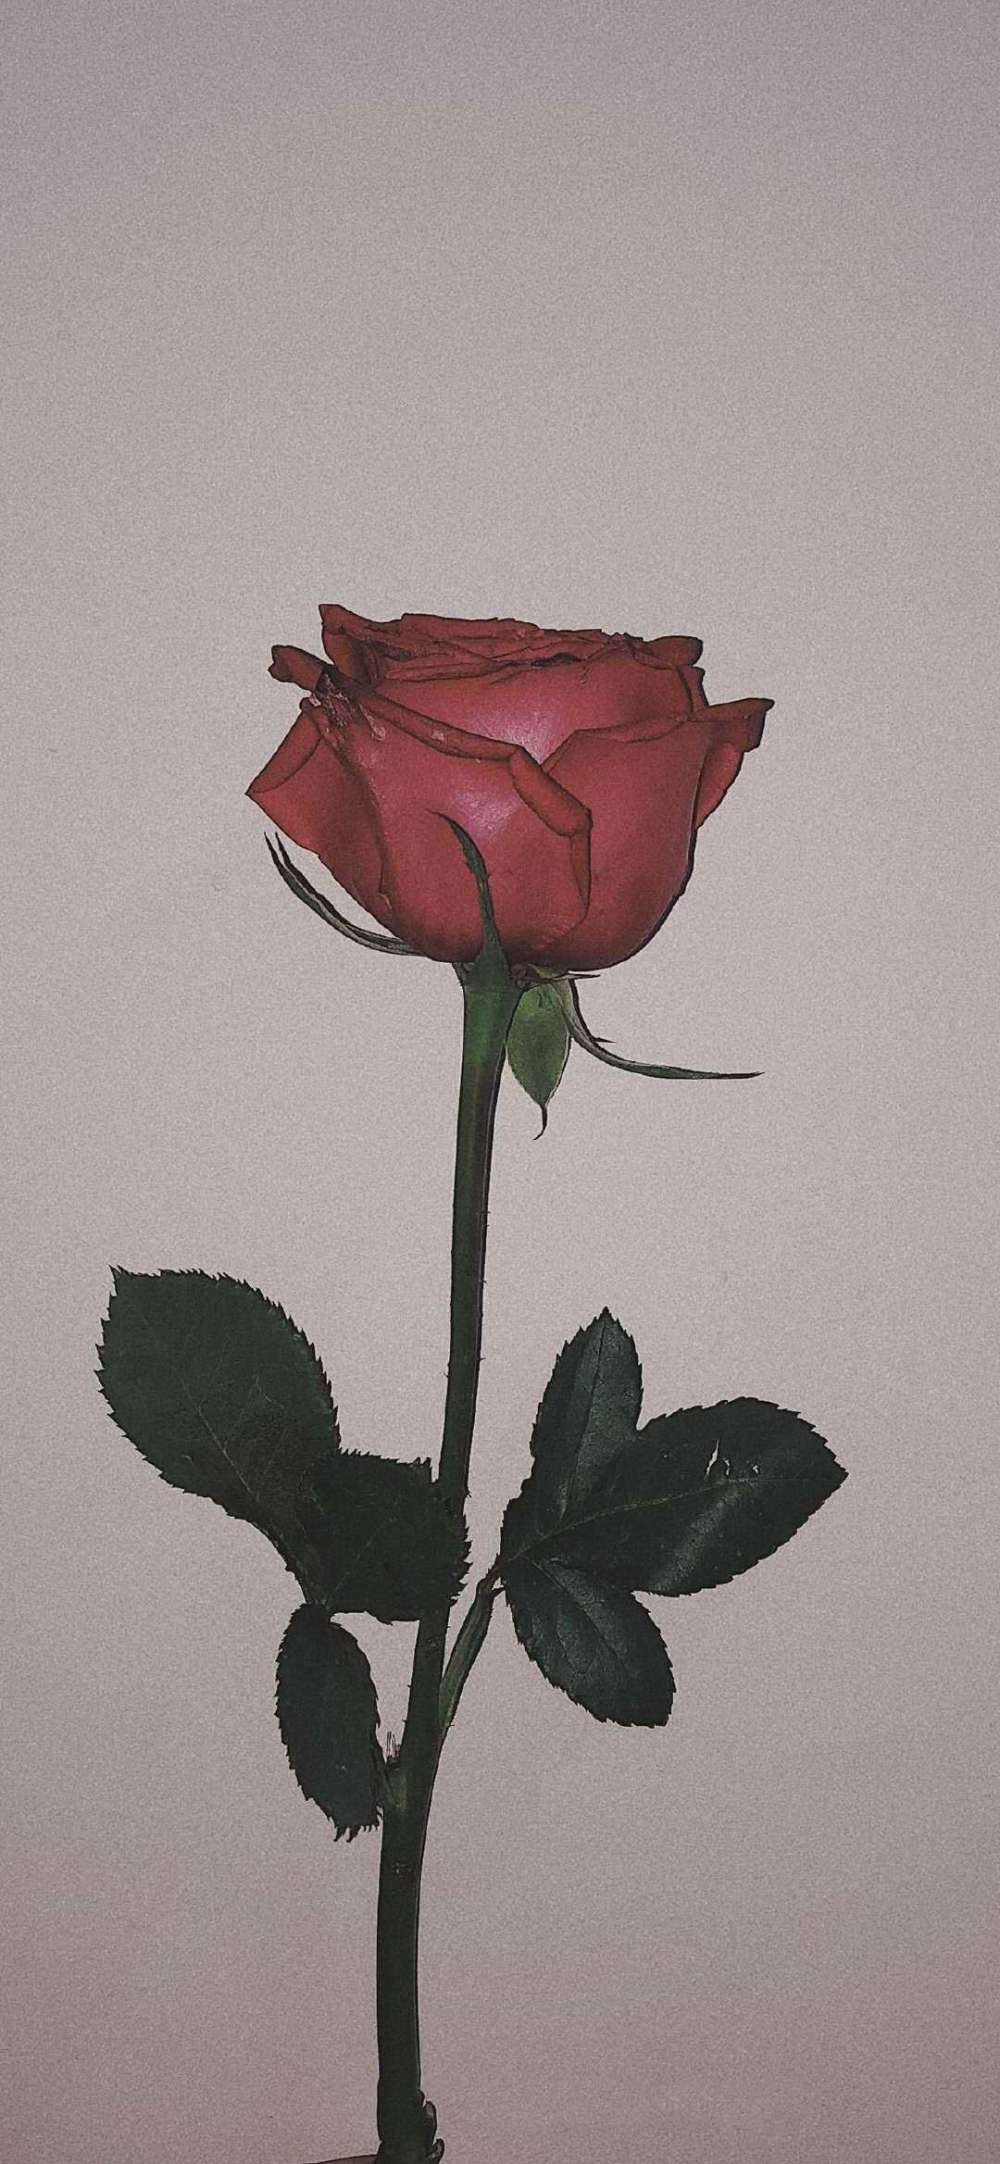 每一个女孩子都值得一支玫瑰花,每一个女孩都应该有自己的唯一